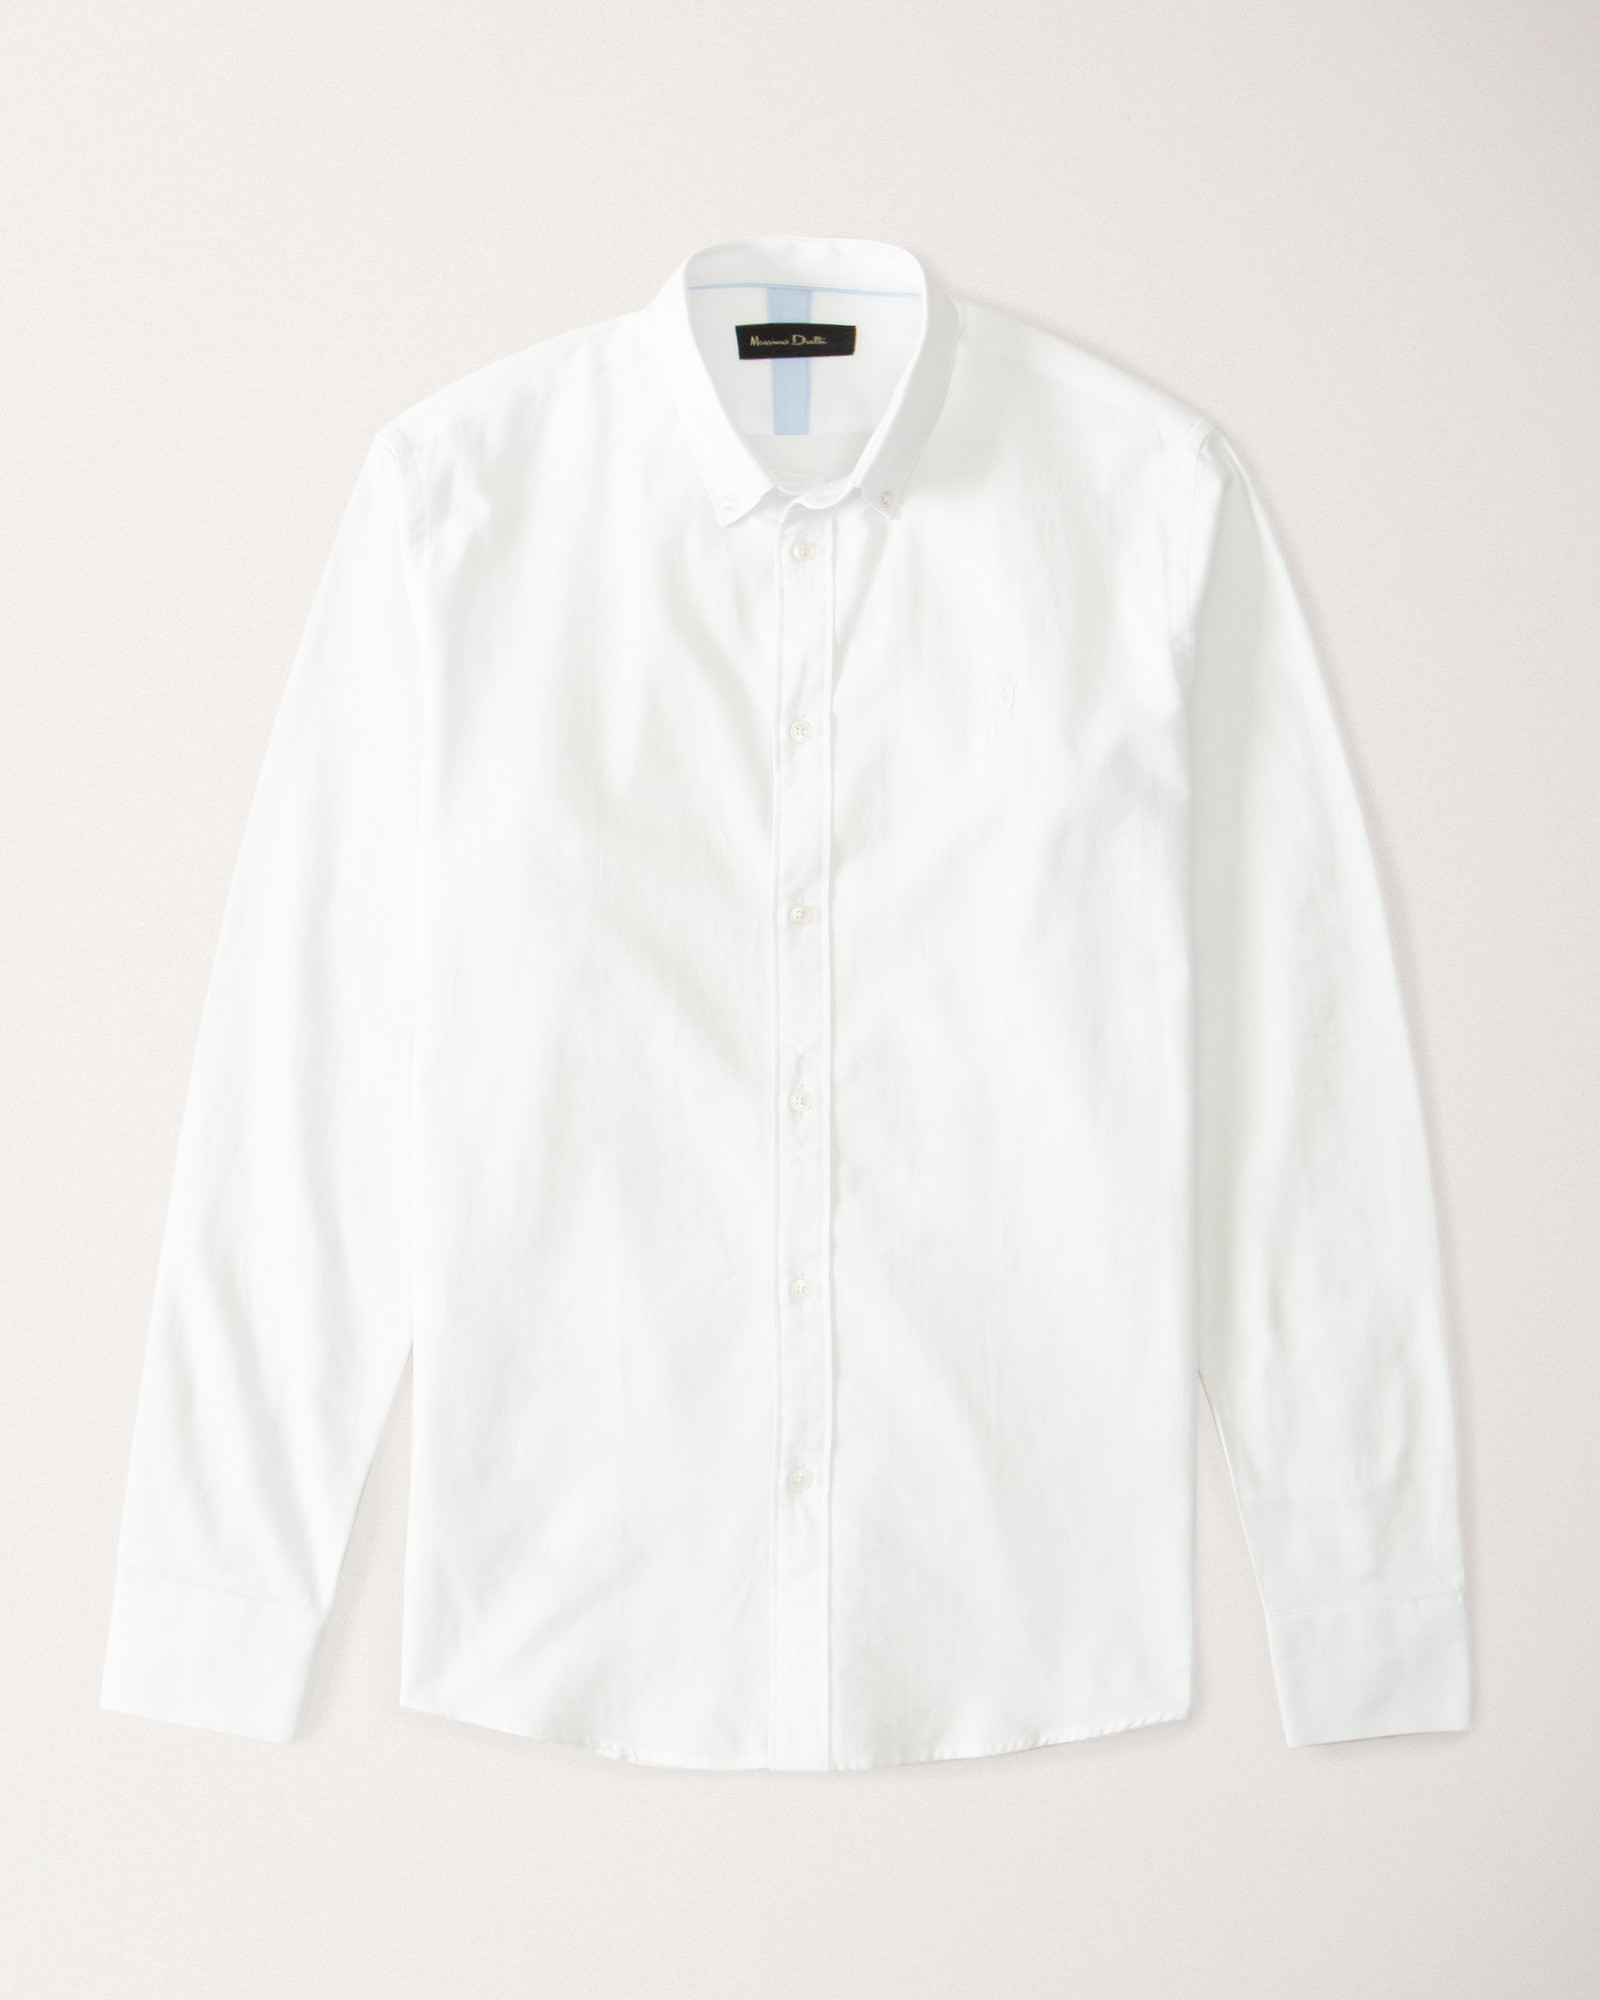 پیراهن مردانه سفید ساده 19421190